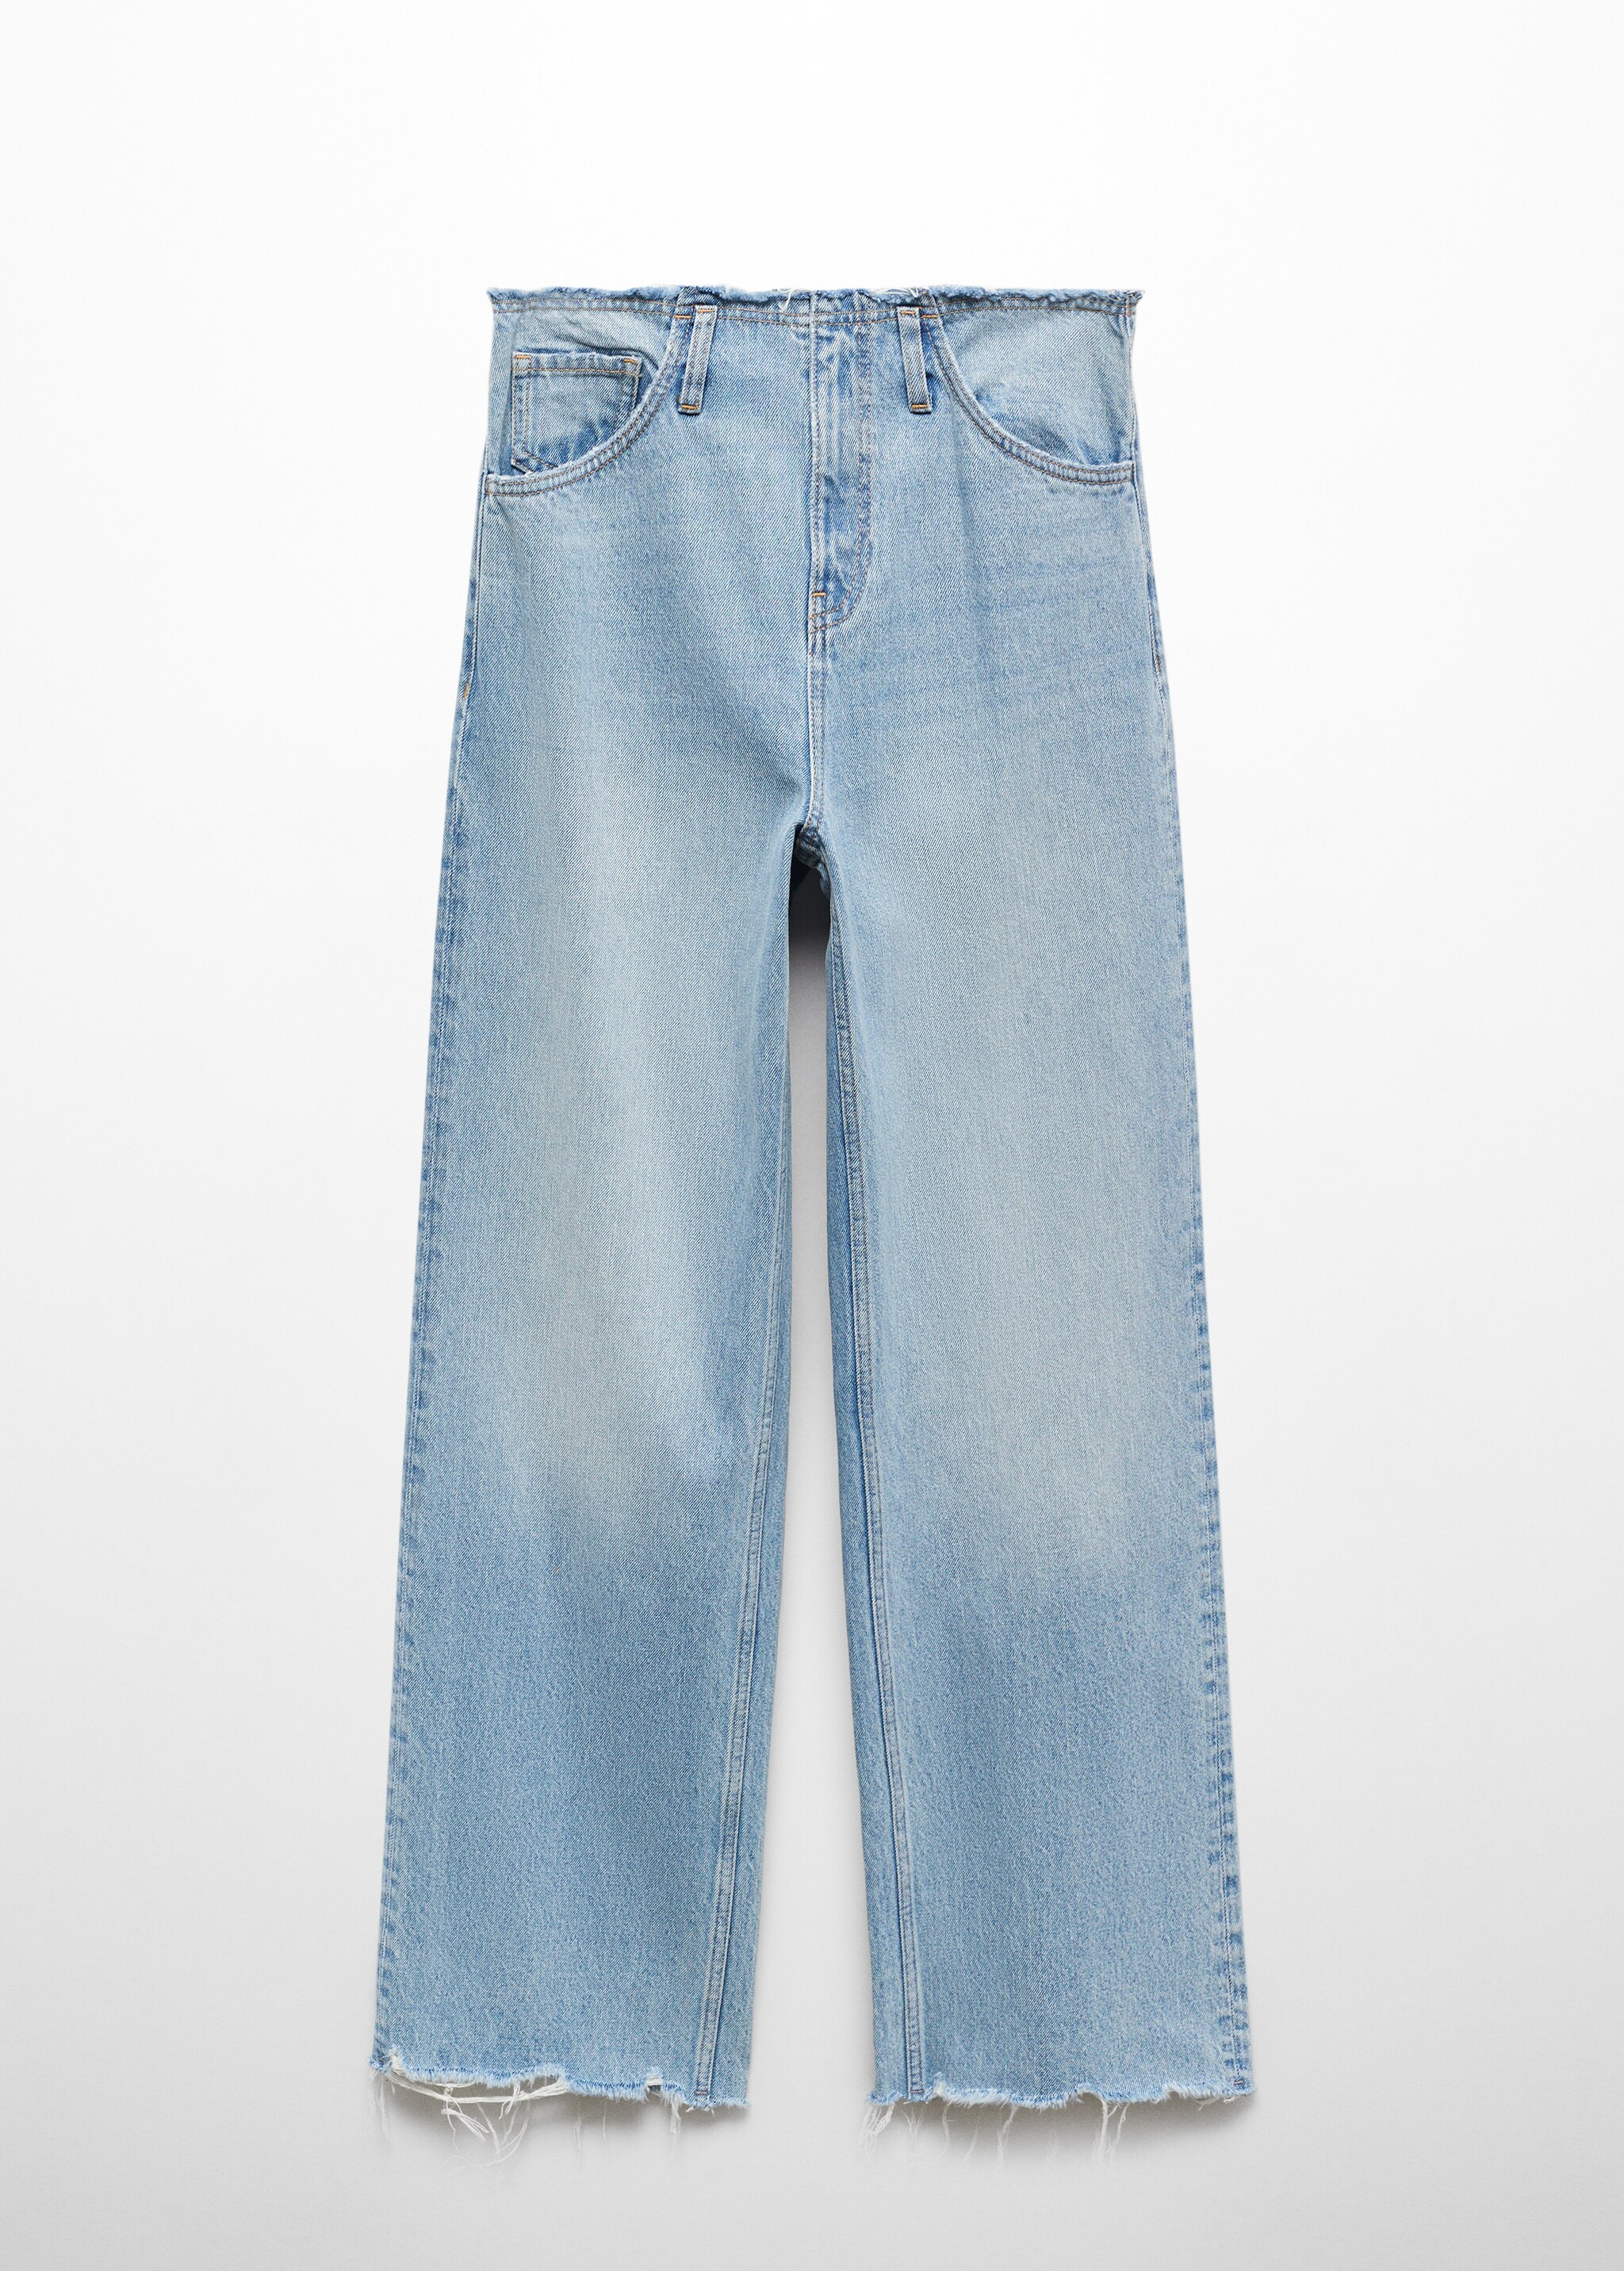 Jeans wideleg terminaciones deshilachadas - Artículo sin modelo